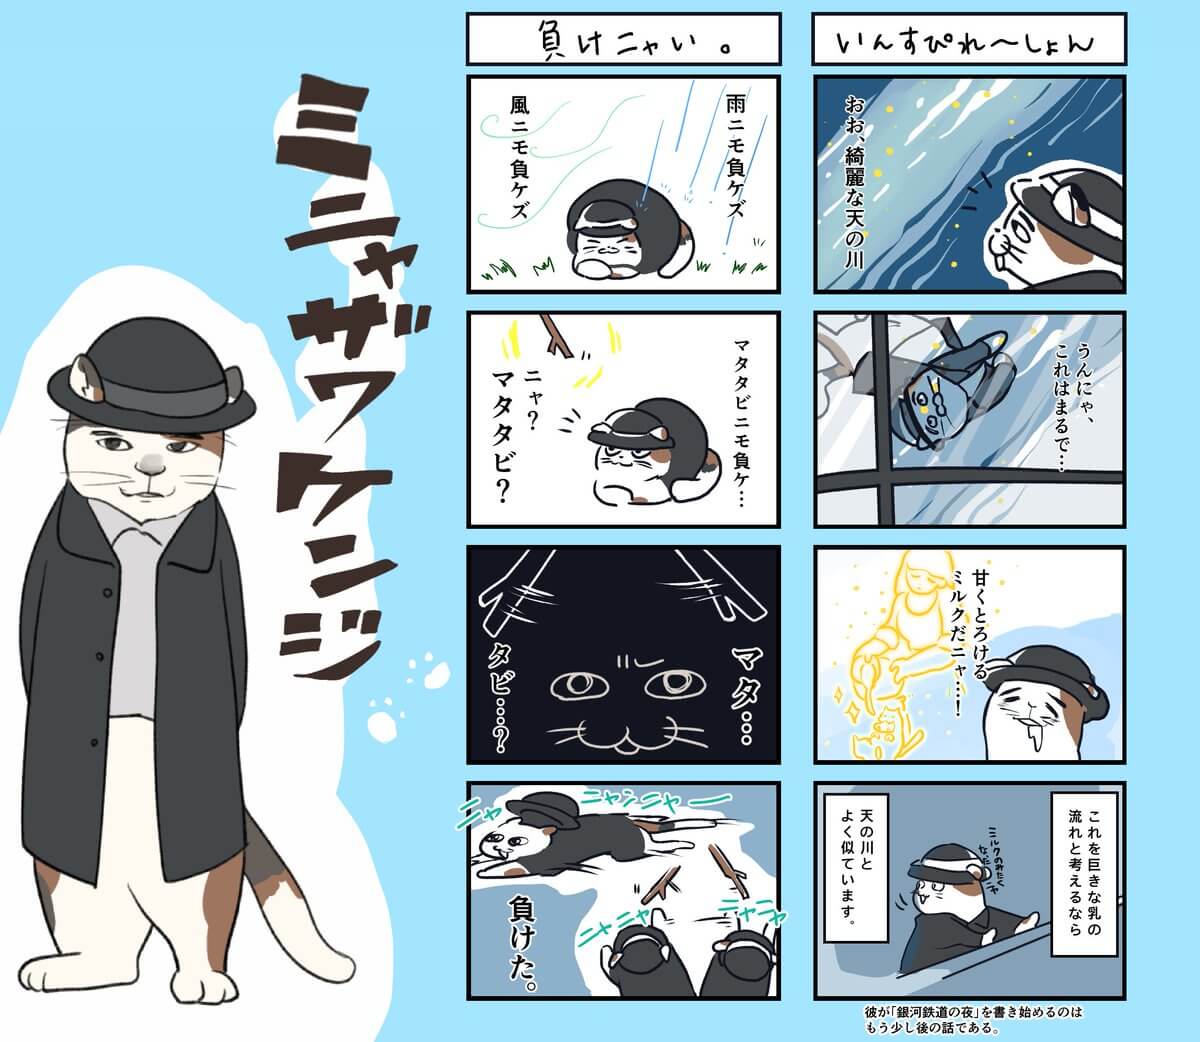 宮沢賢治を猫化した4コマ漫画「ミニャザワケンジ」 by やじまり